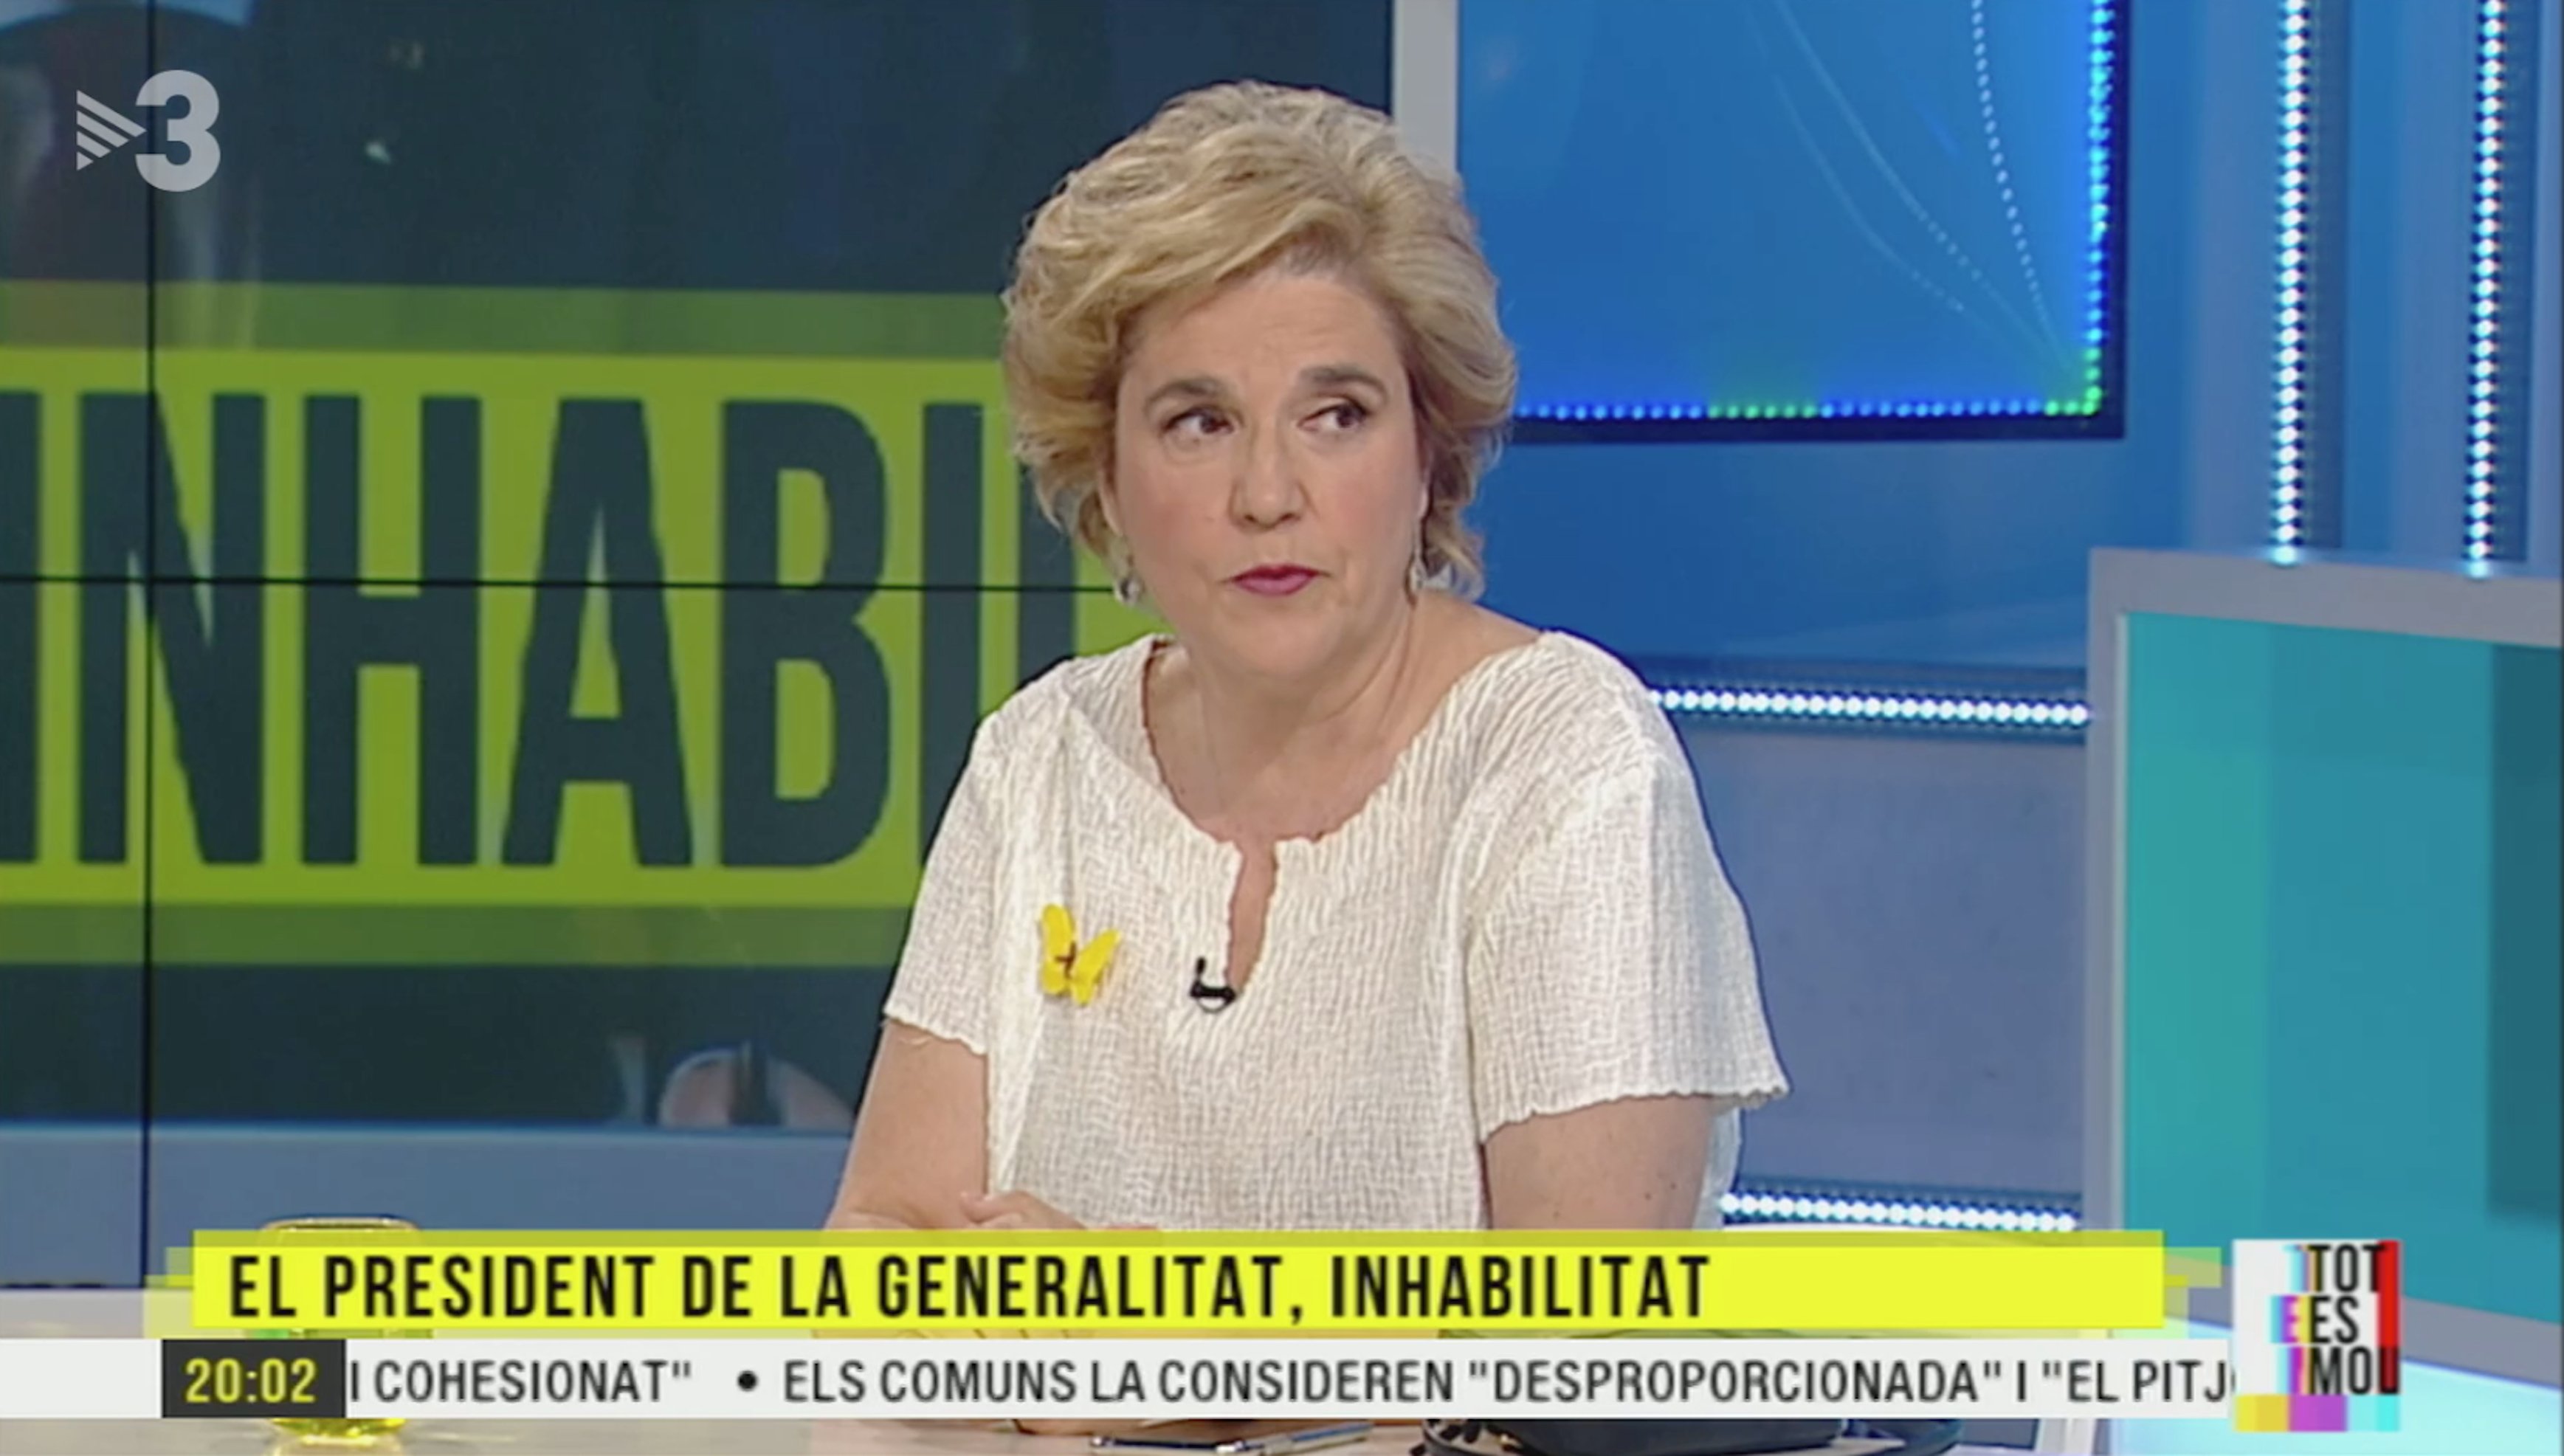 Rahola, implacable amb Espanya a TV3 per l'atropellament al president Torra